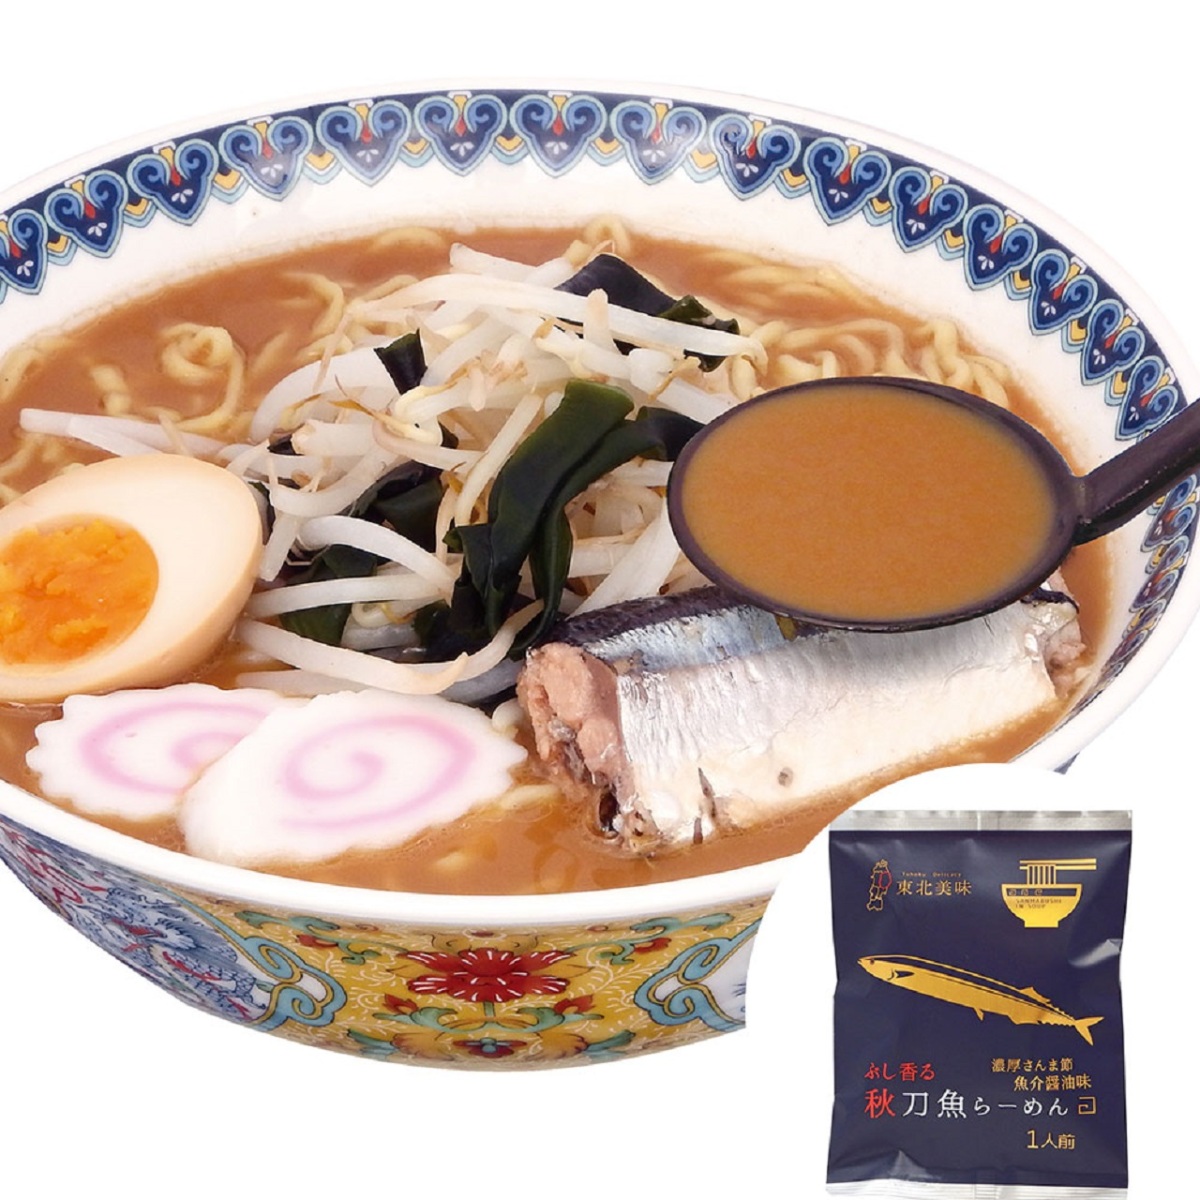 小山製麺 小山製麺 秋刀魚らーめん 120g×40個 インスタントラーメンの商品画像